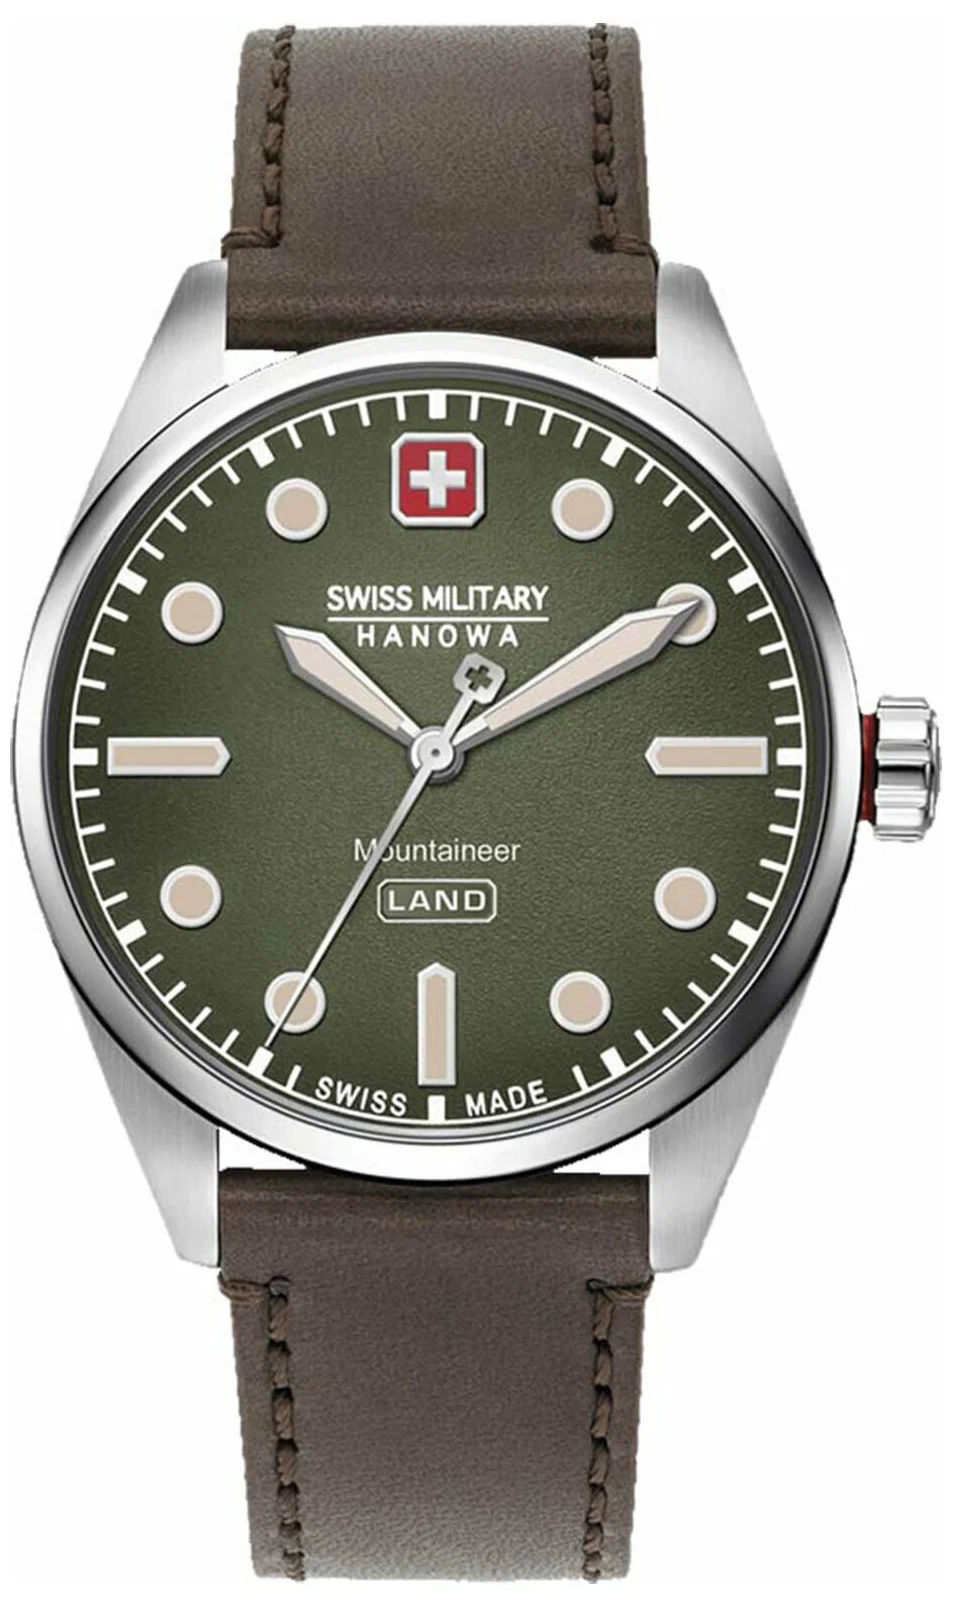  Swiss Military Hanowa 06-4345.7.04.006